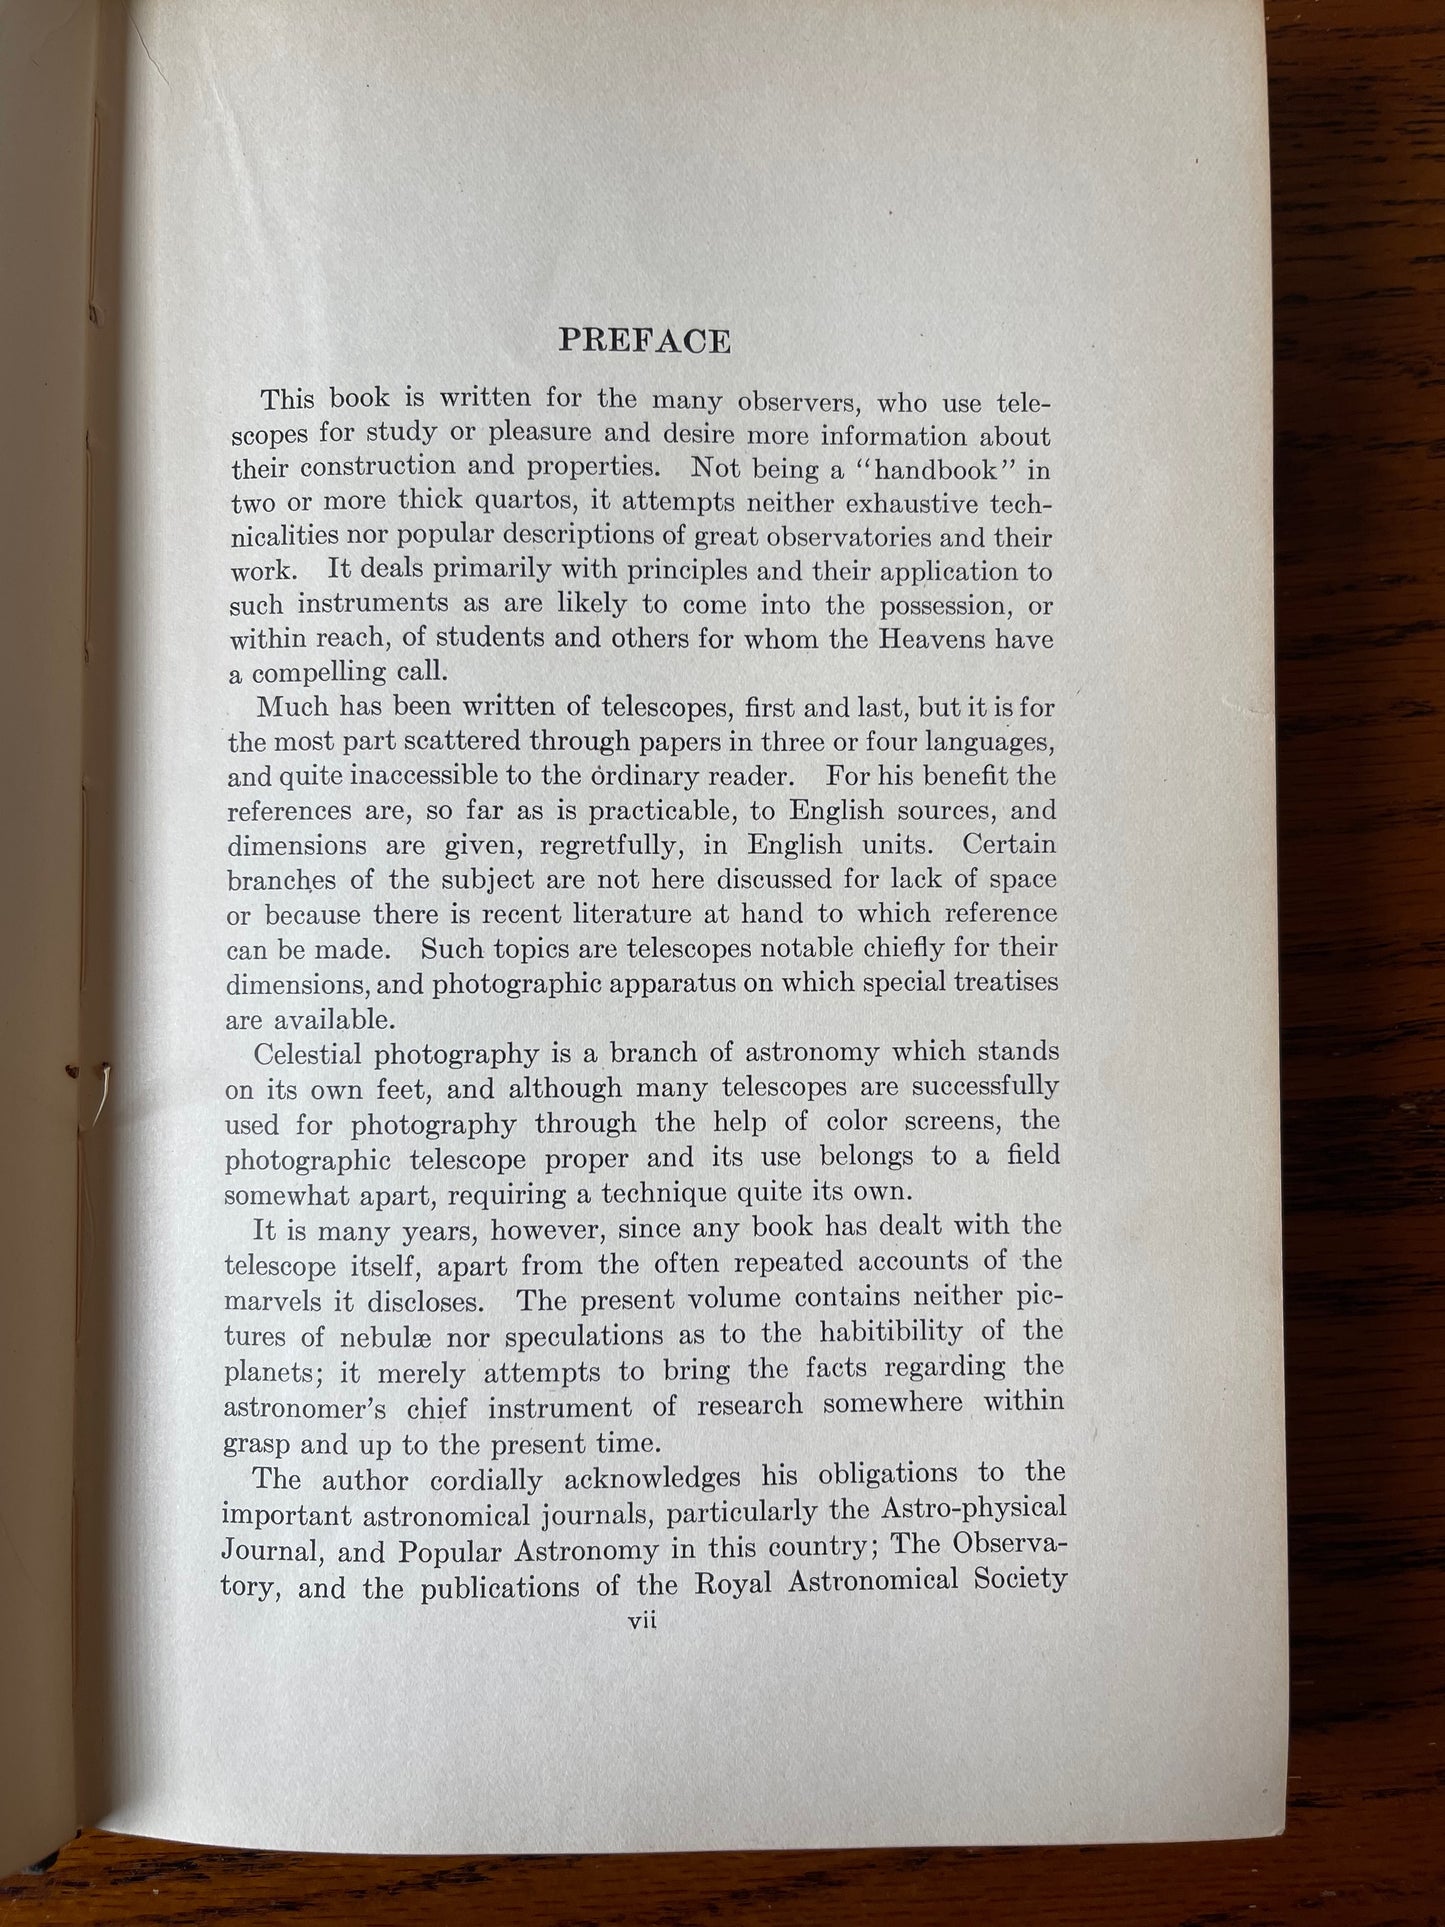 The Telescope / First Edition, Second Impression / 1922 - Precious Cache